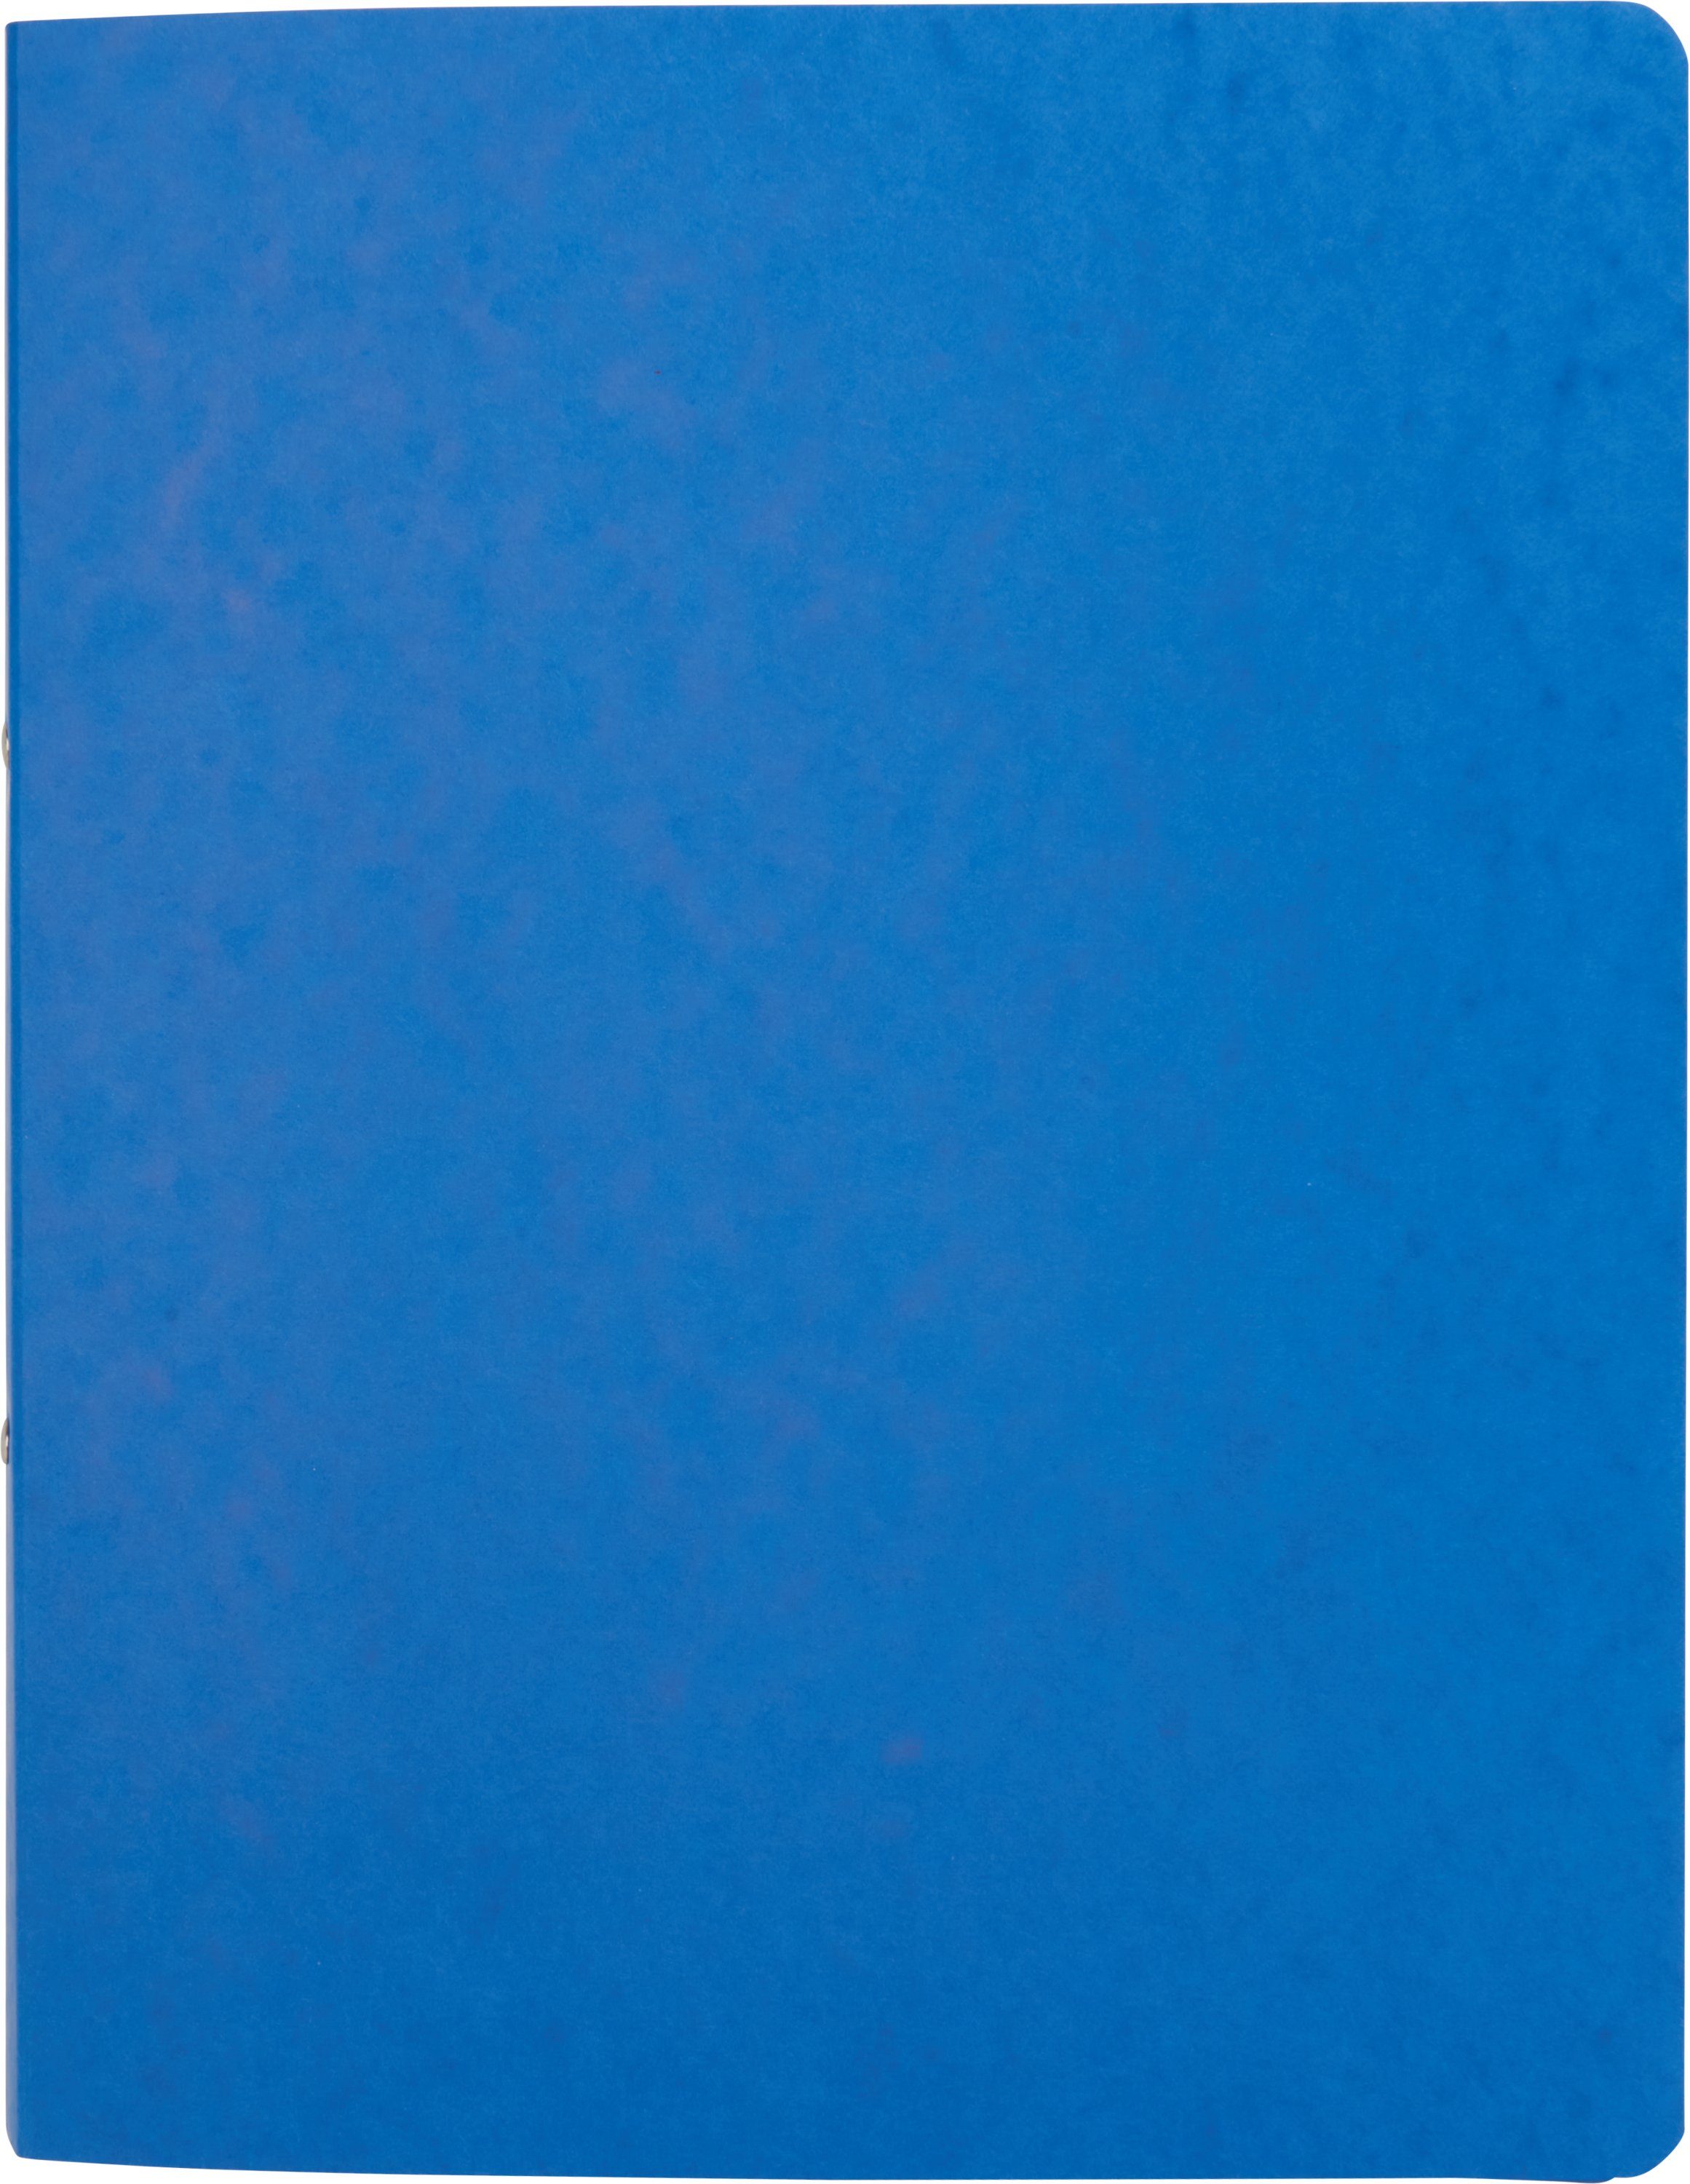 Blau DIN Ringbuch, BRUNNEN A4 Schreibmappe